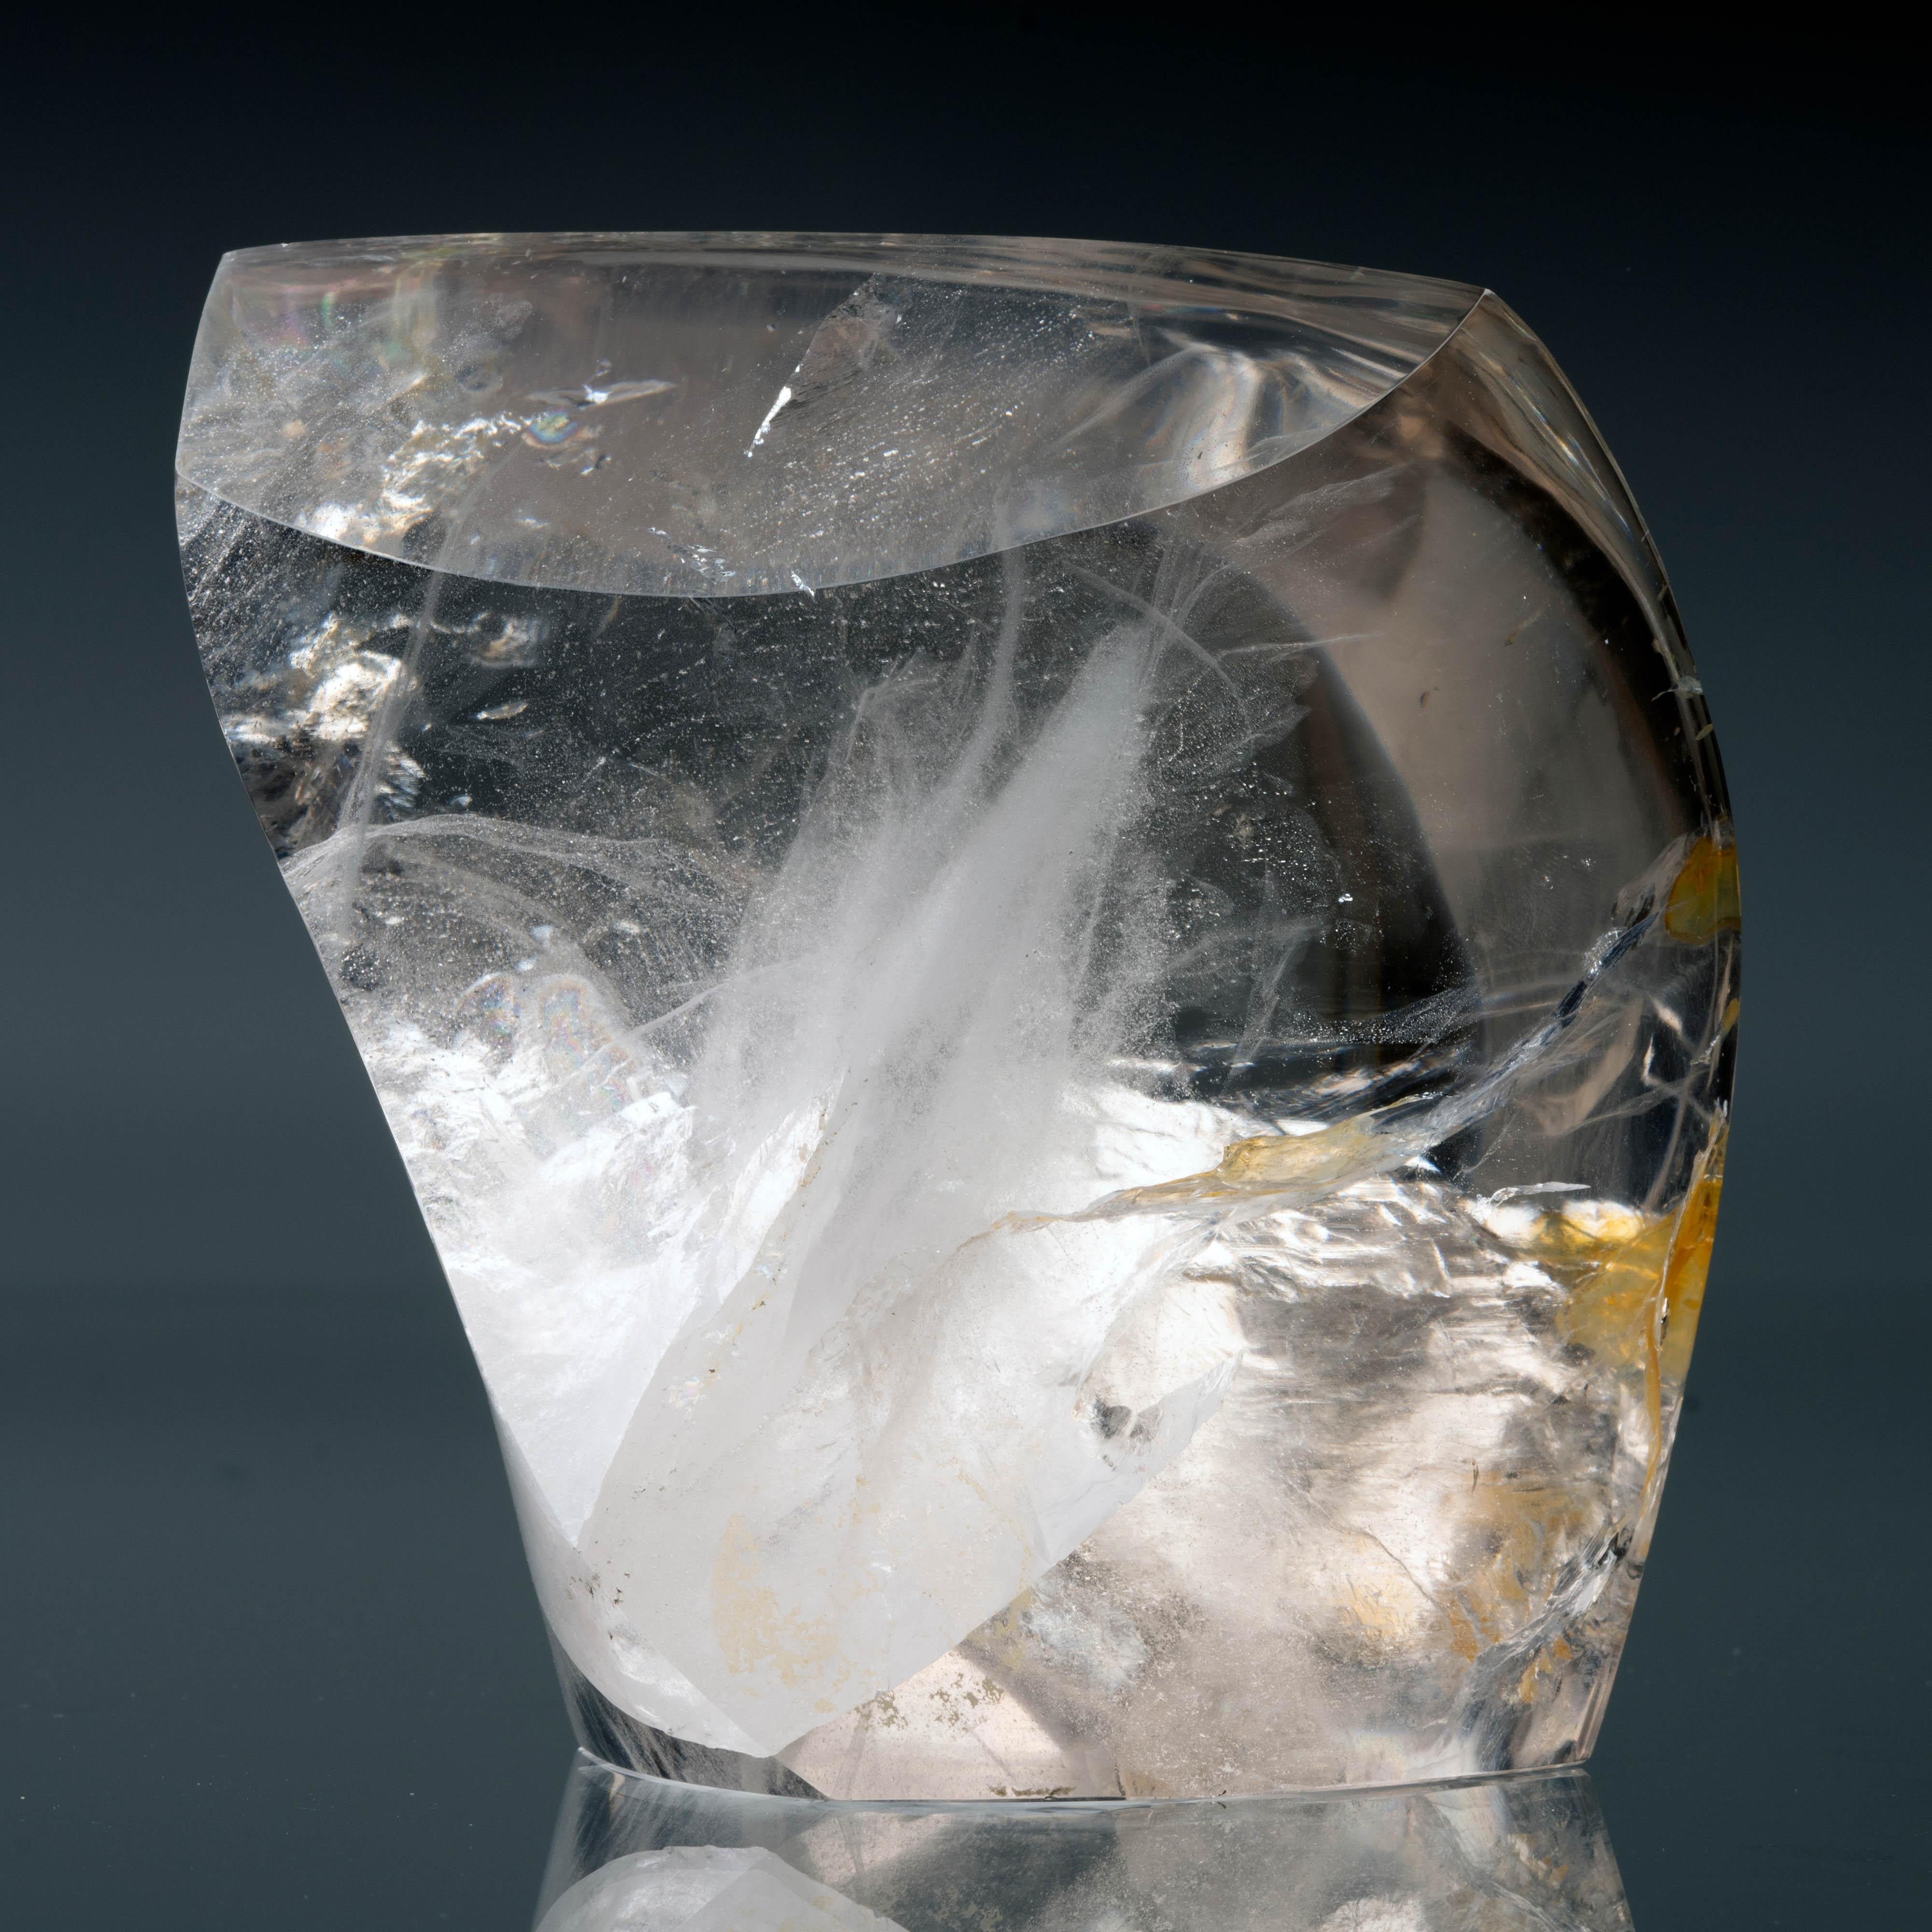 Cette belle forme libre polie à la main en quartz clair lustré du Minas Gerais, au Brésil, présente des inclusions uniques en forme de volutes à l'intérieur. Le Minas est réputé pour avoir produit la plus grande quantité de cristaux de quartz au